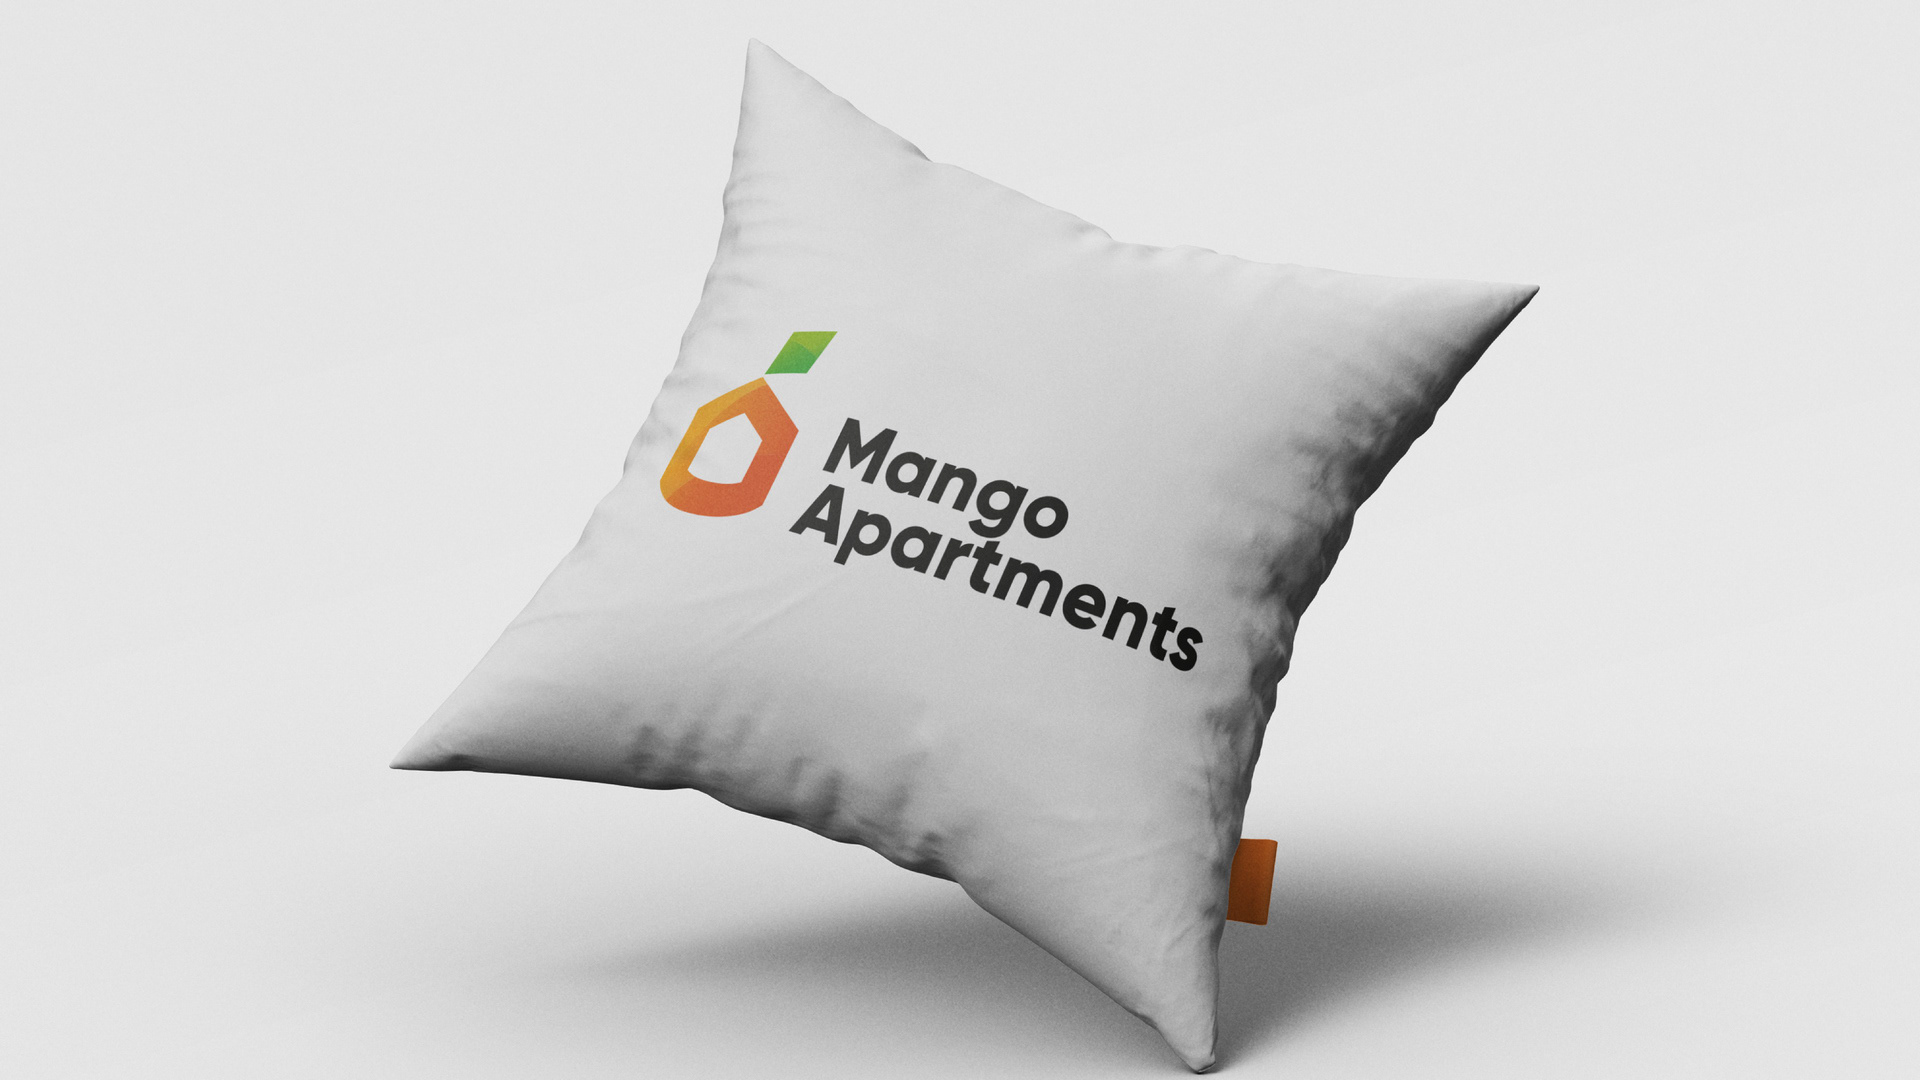 Логотип Mango Apartments